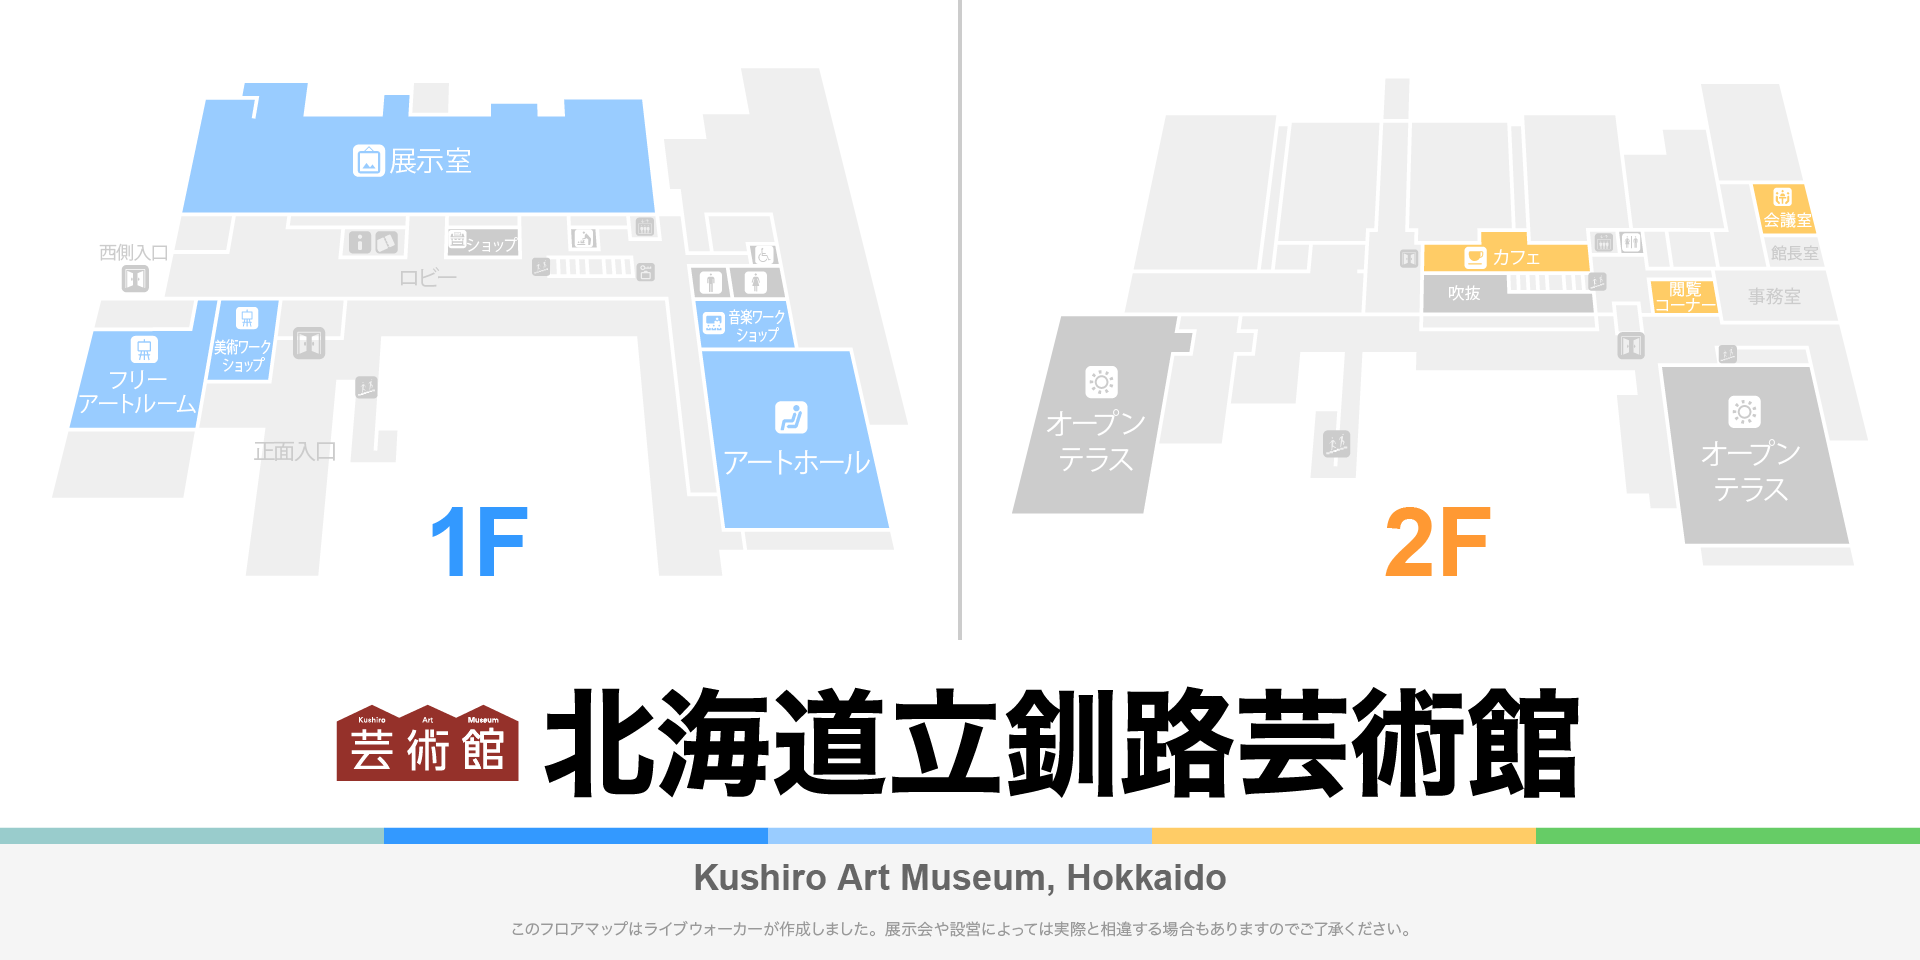 北海道立釧路芸術館 アートホールのフロアマップ